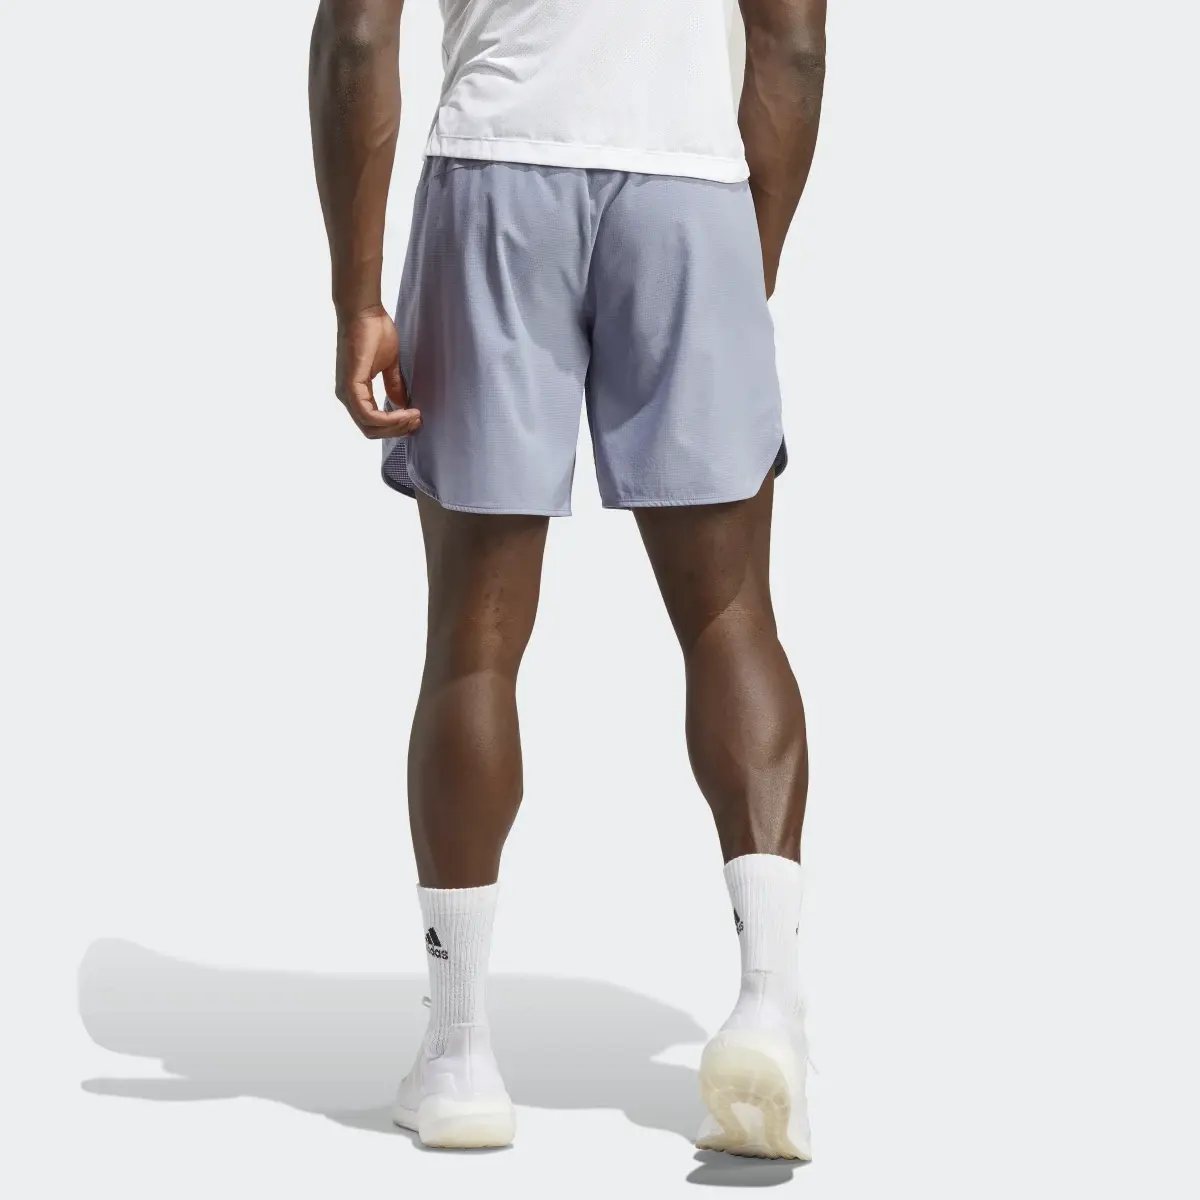 Adidas Designed for Training HIIT Training Shorts. 2